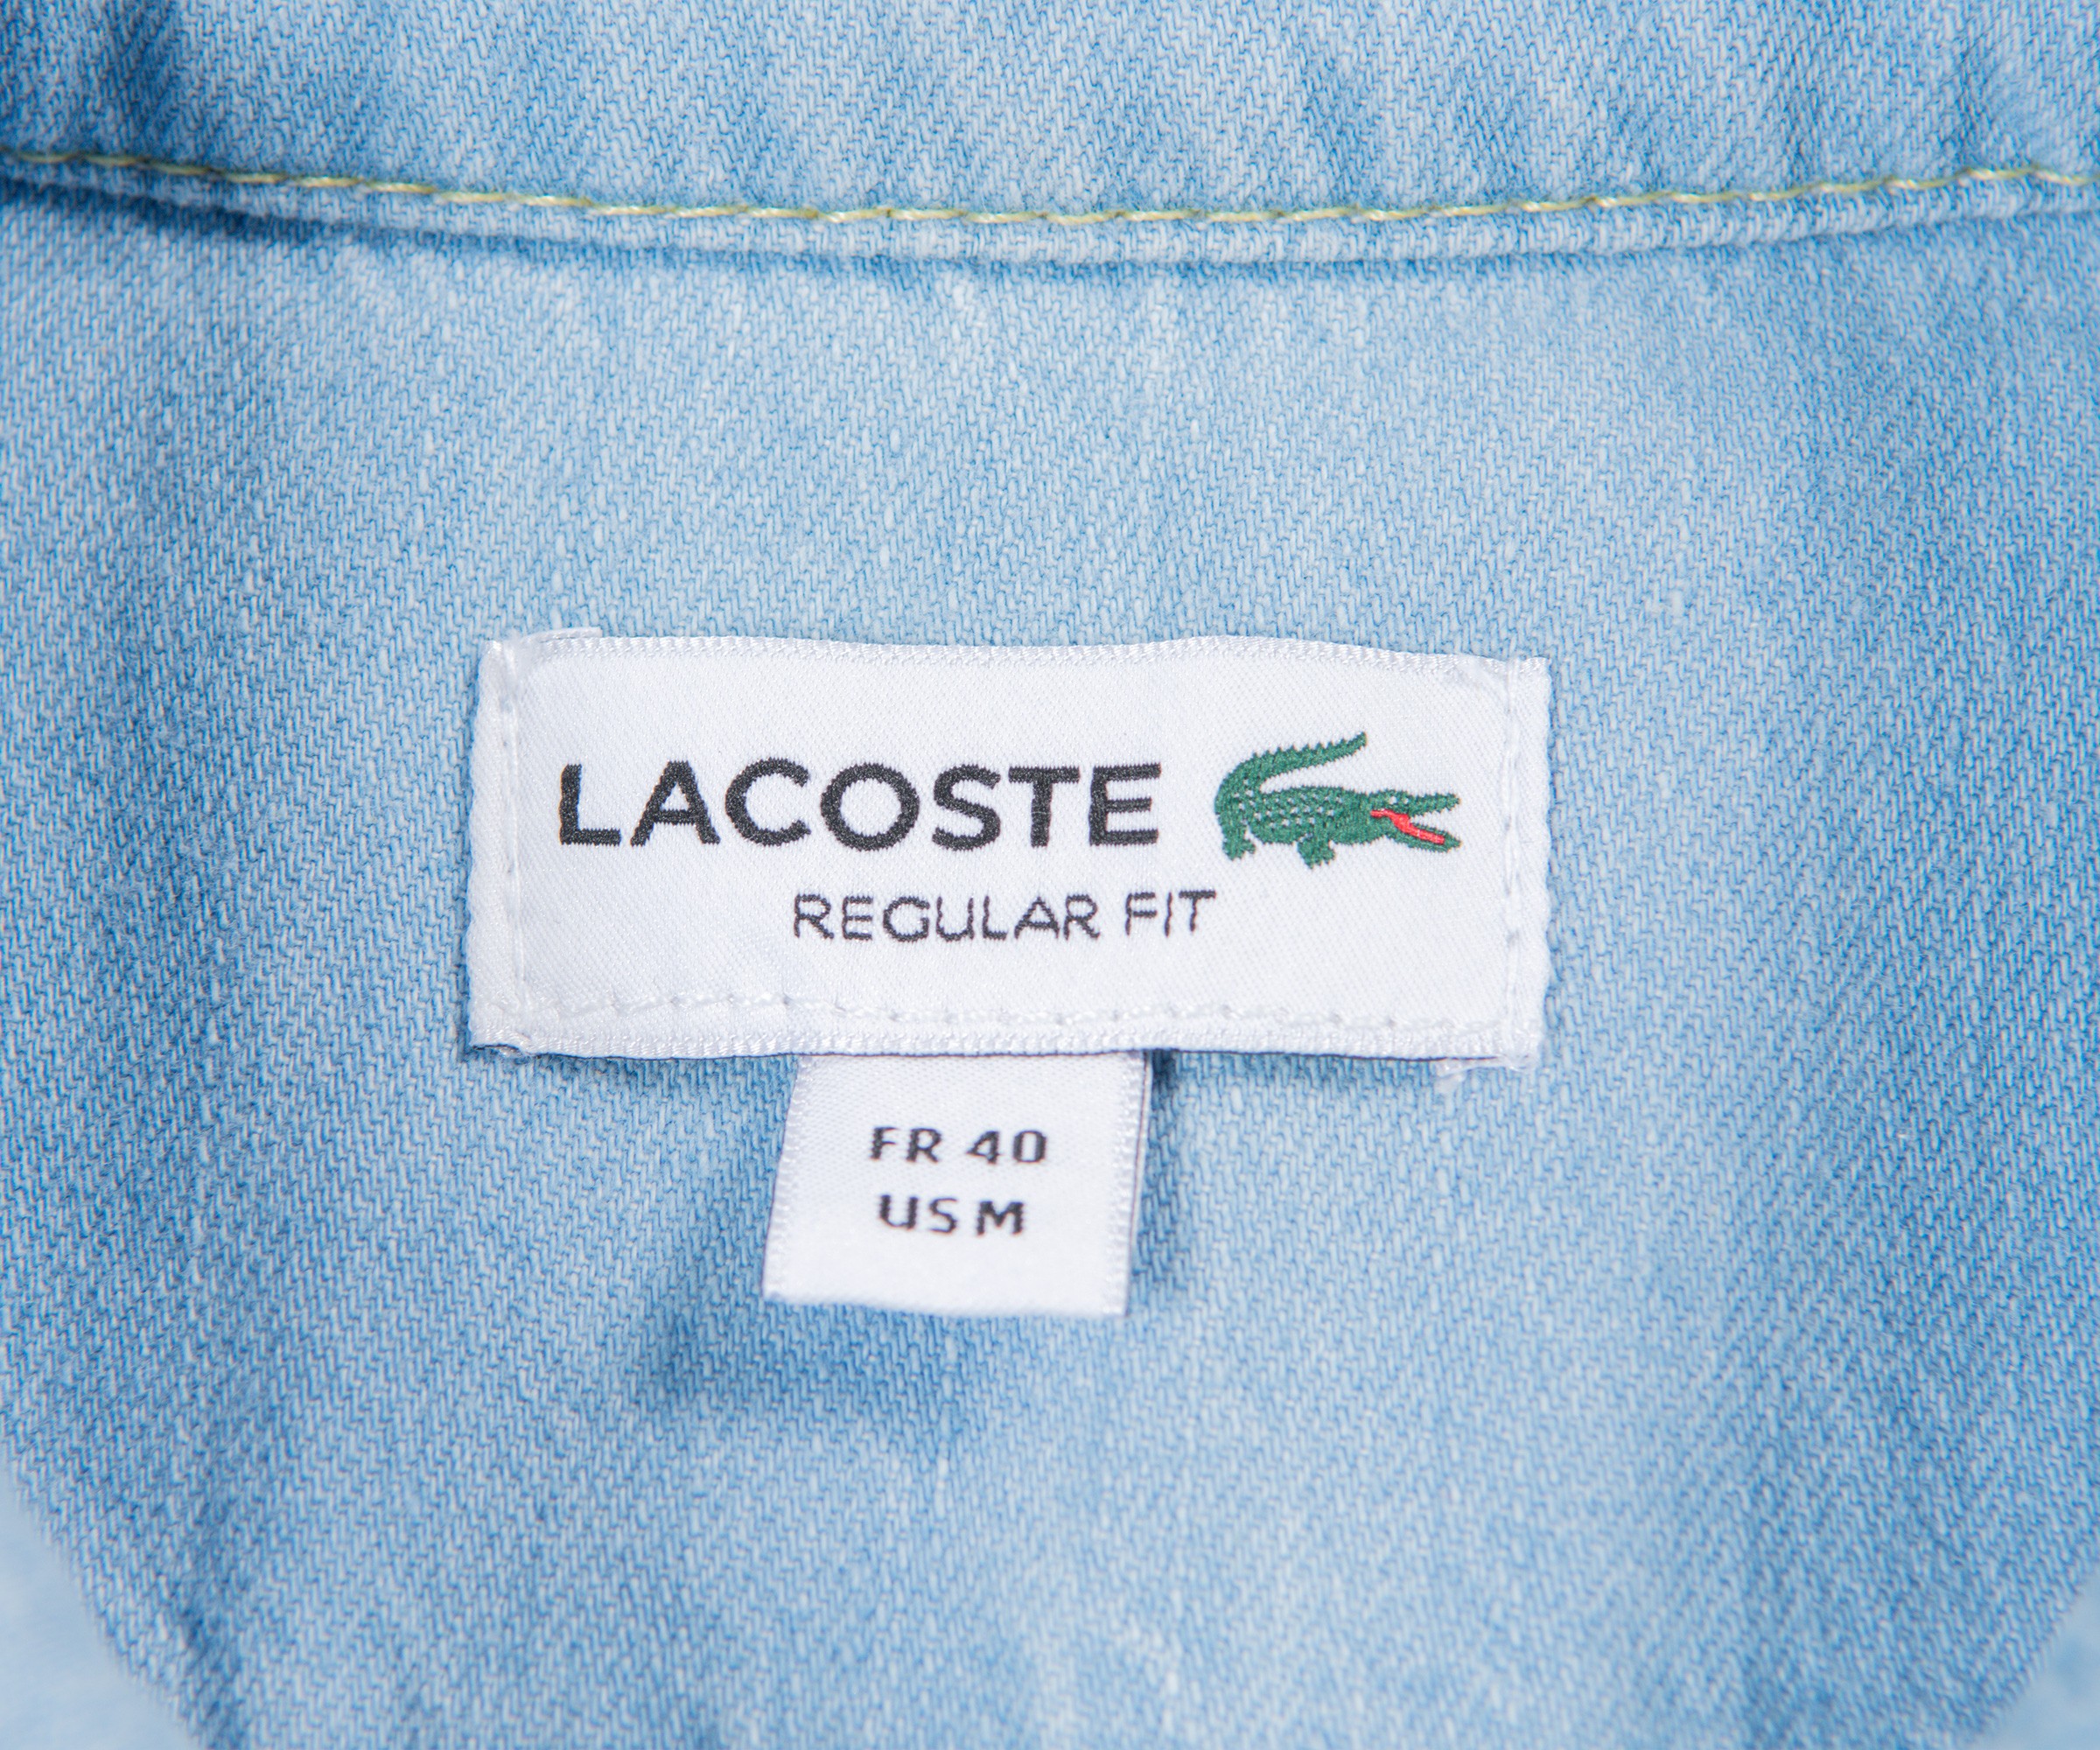 At opdage Stuepige Kondensere Lacoste 'Regular Fit' Denim Shirt Light Blue